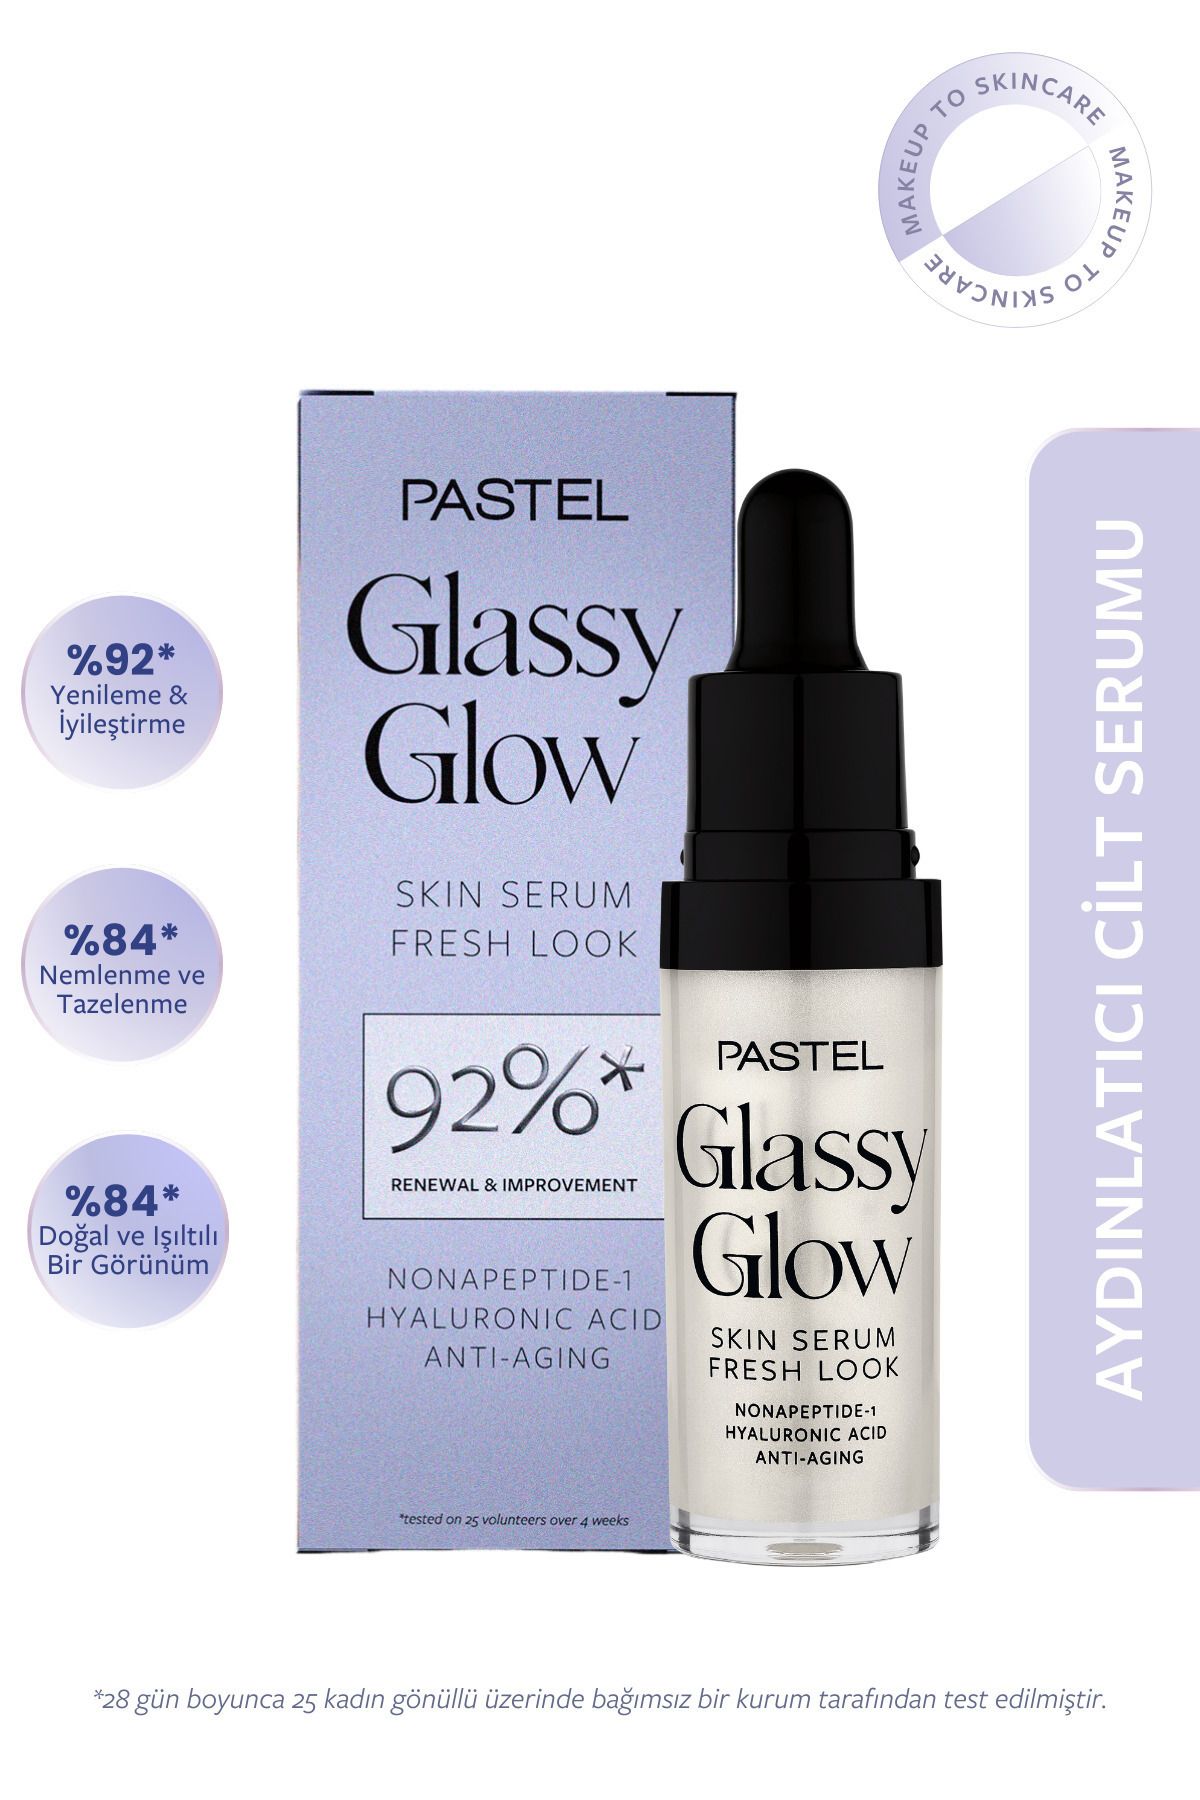 Pastel Cilt Anında Doğal ve Işıltılı Bir Görünüm Sağlayan ve Yenileyici Glassy Glow Skin Serum 15 ML